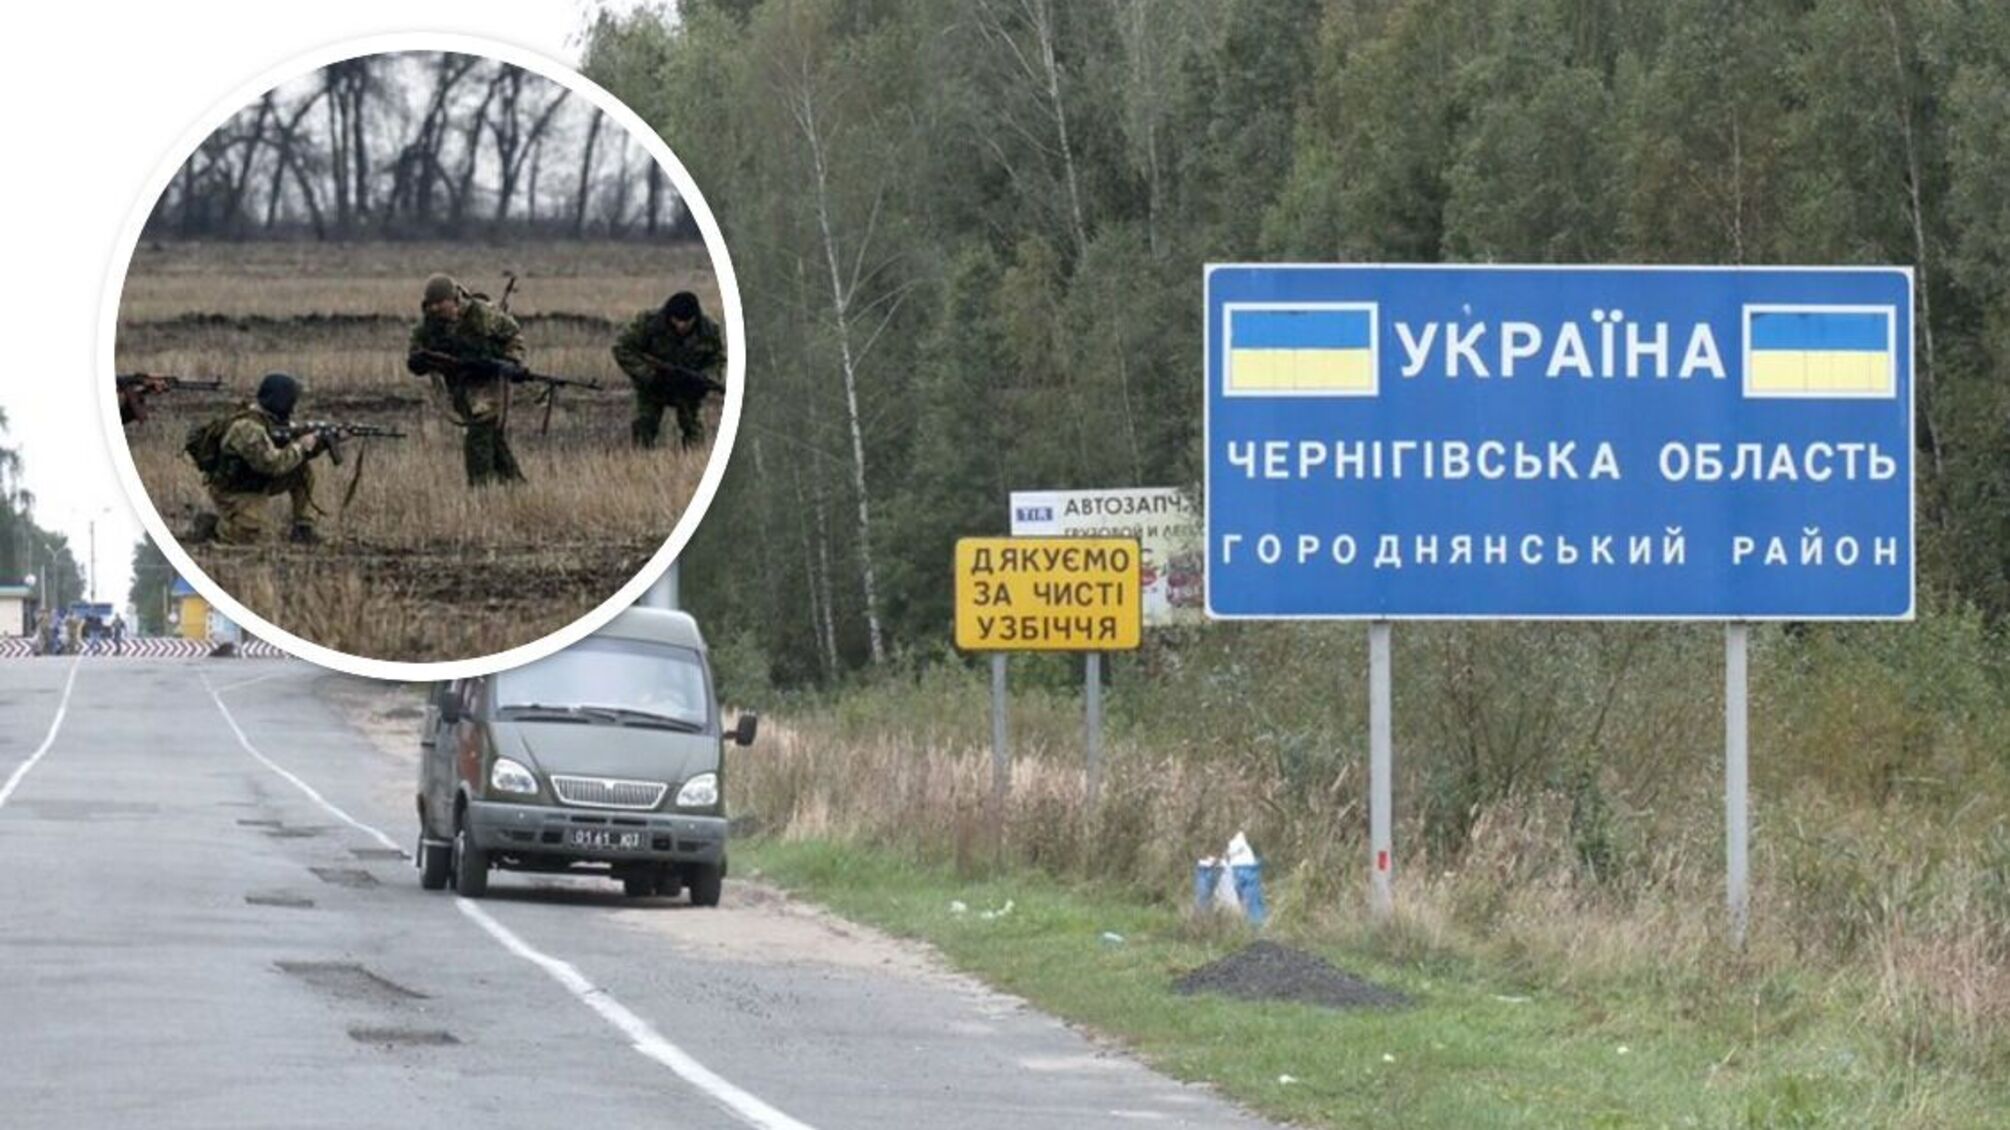 ДРГ на Чернігівщині та Херсонщині: росіяни шукають місця, де можна пройти непоміченими